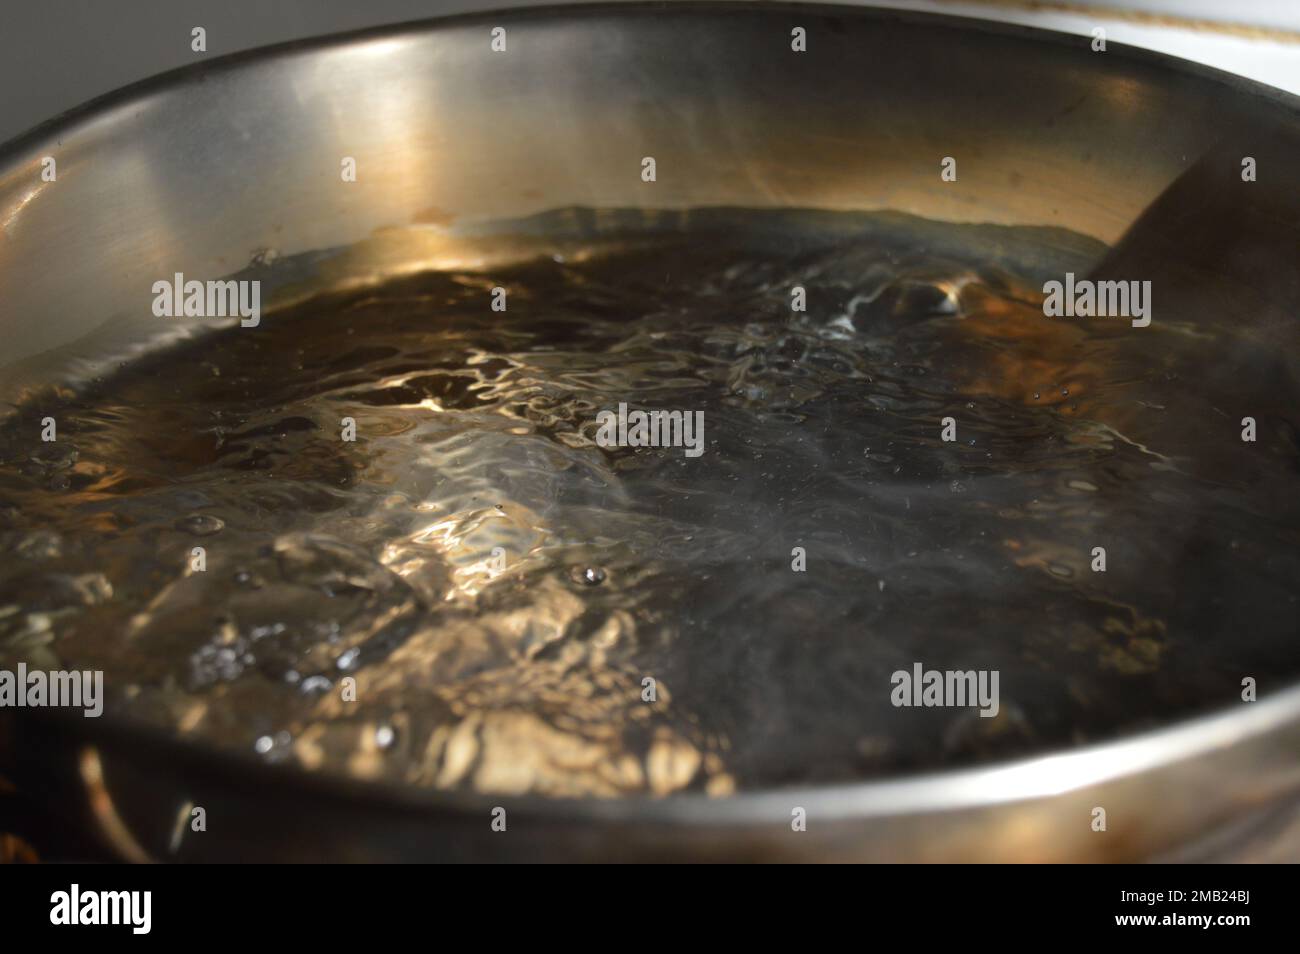 Ritratto di acqua bollente in una pentola bollente. Foto Stock